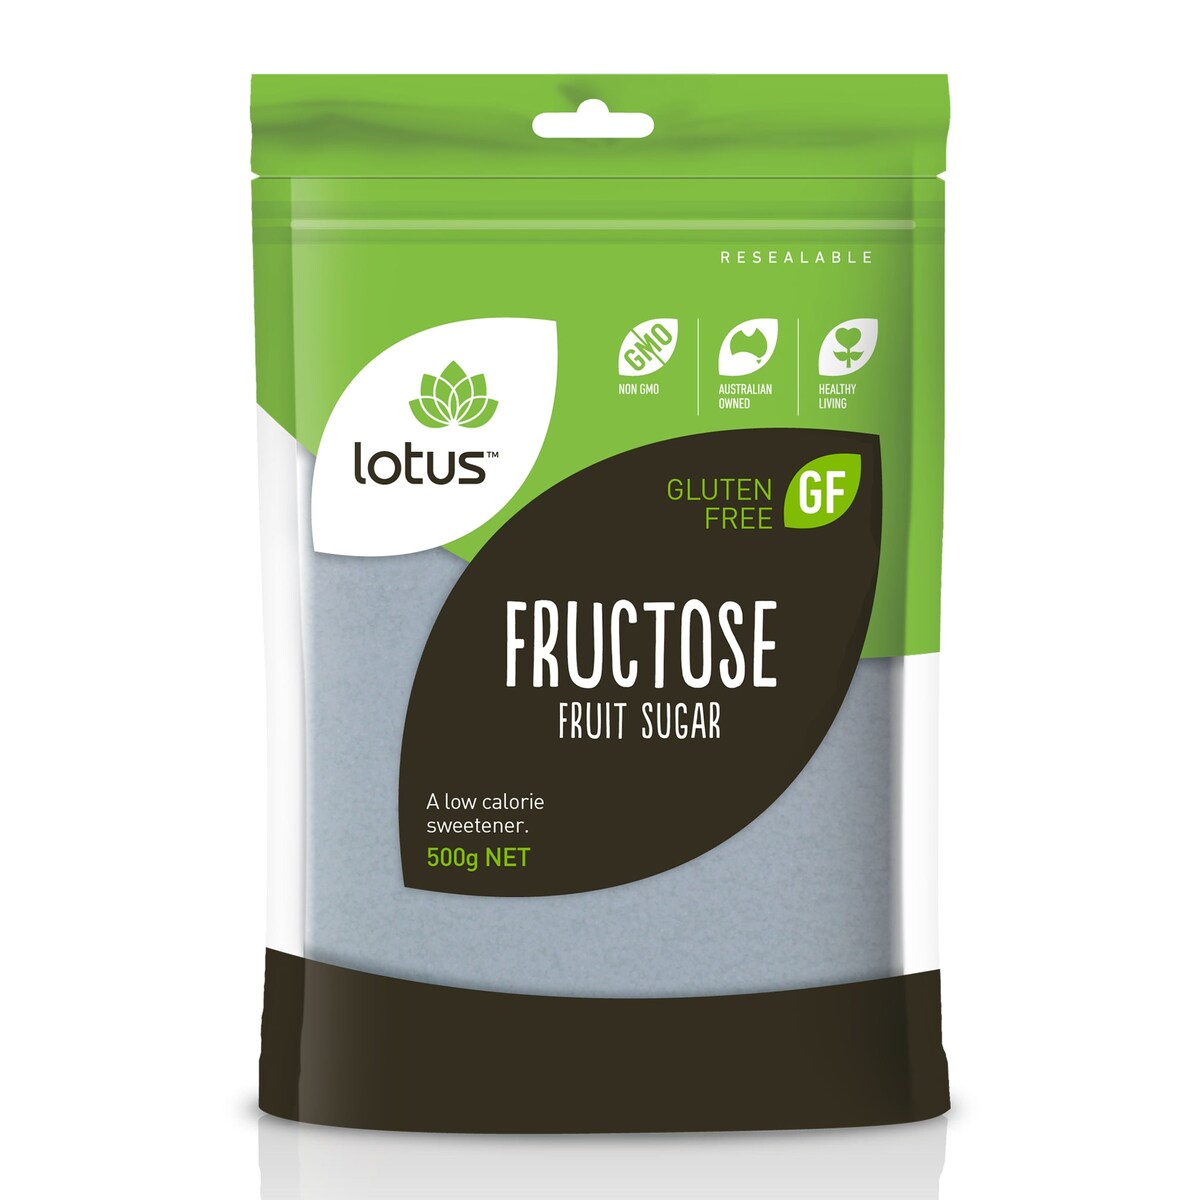 Lotus Fructose (Fruit Sugar) 500g